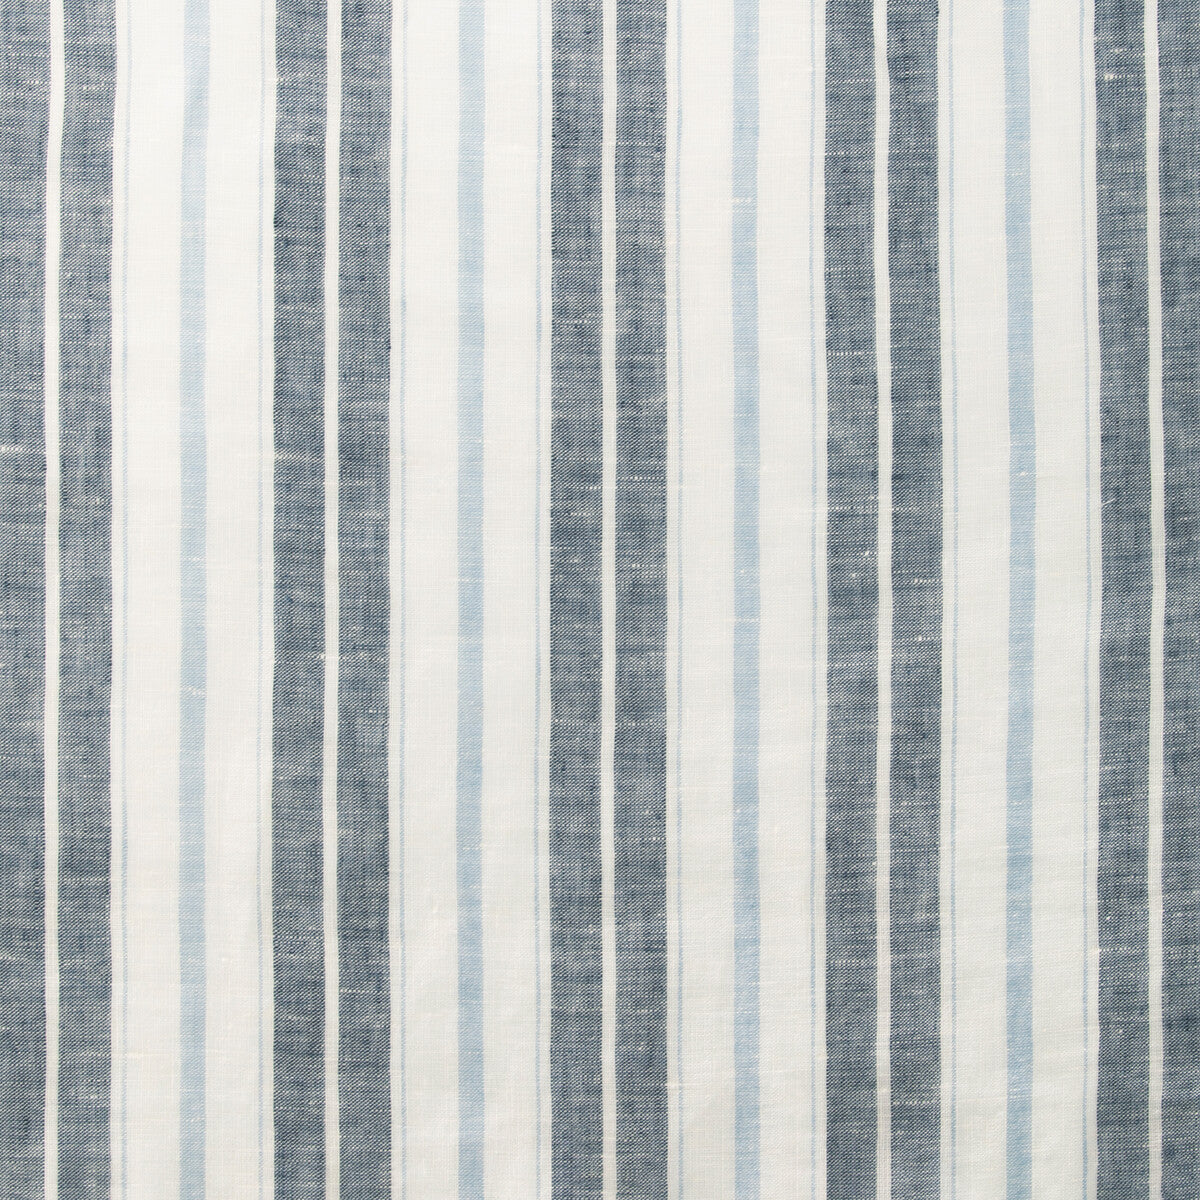 Kravet Design fabric in 4841-51 color - pattern 4841.51.0 - by Kravet Design